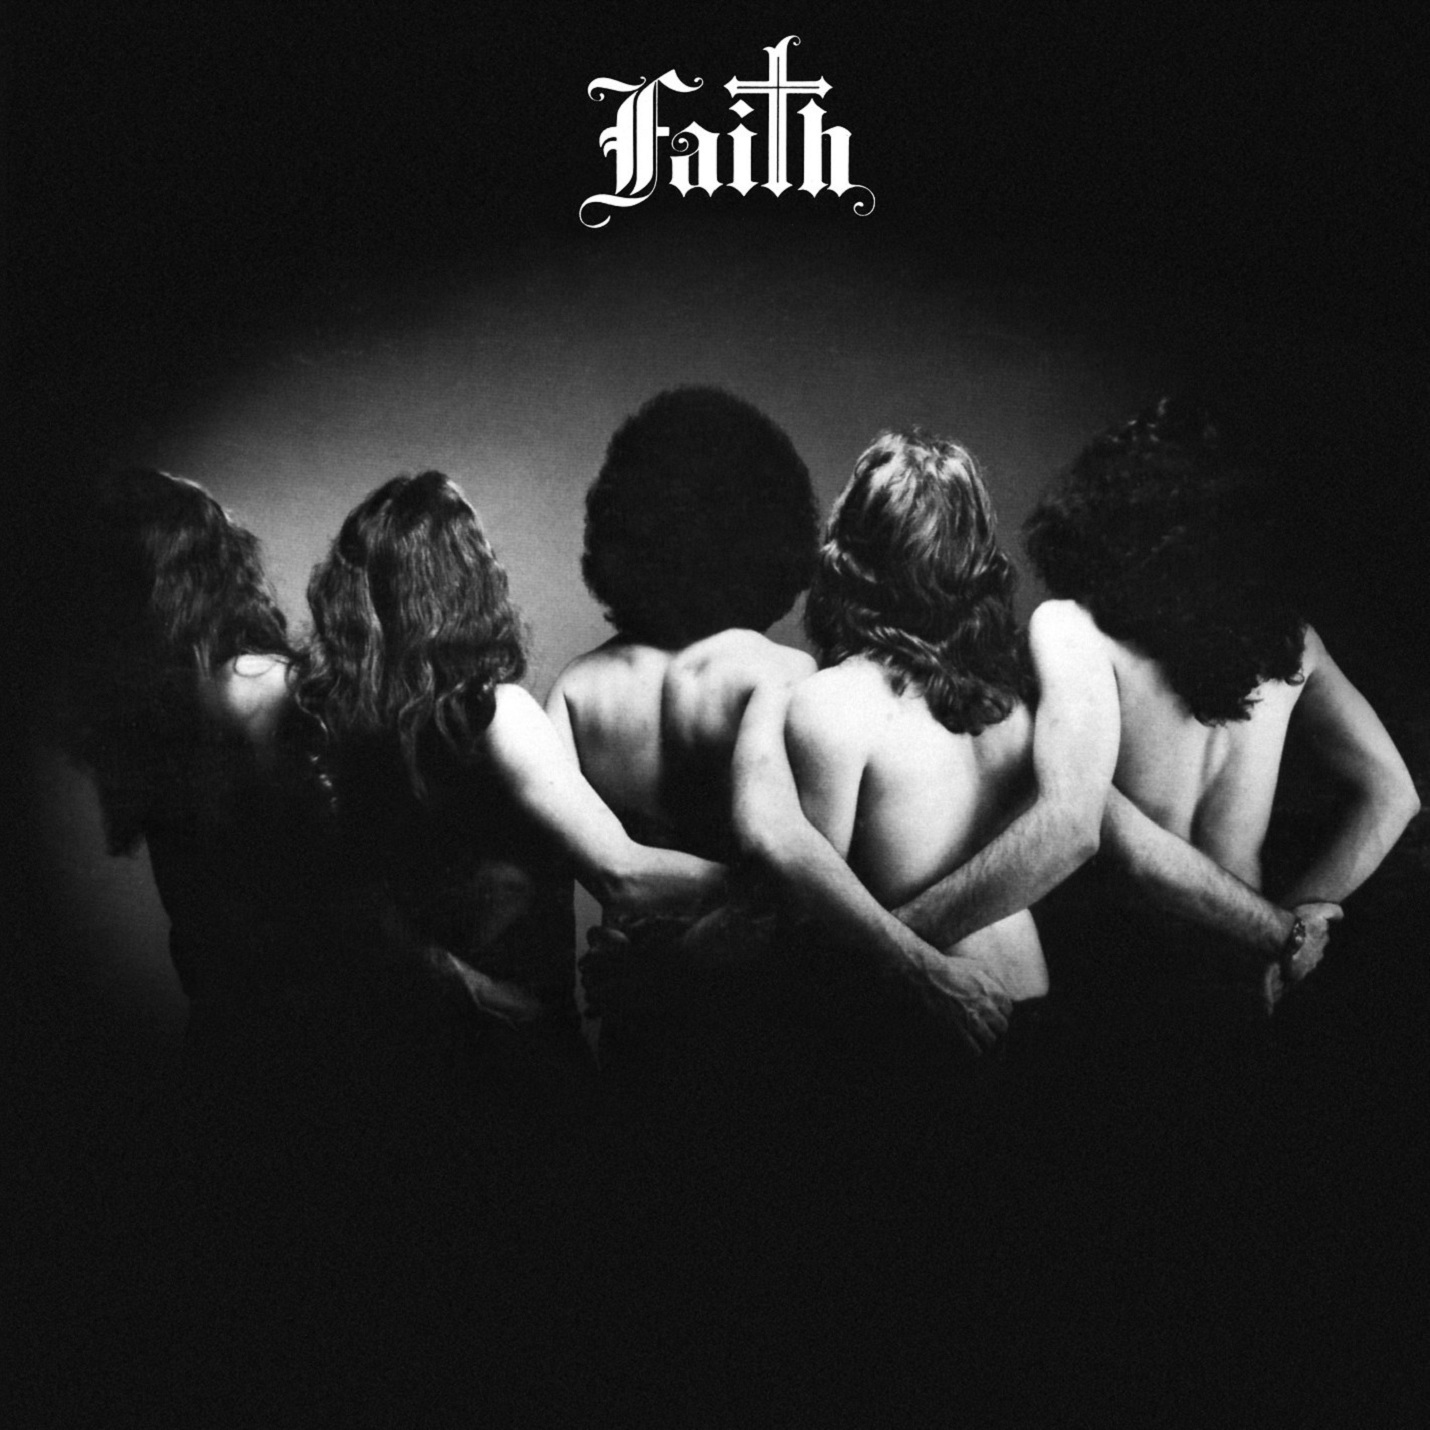 The answer is dream. Faith антология. Faith album. Faith_Schaffer.